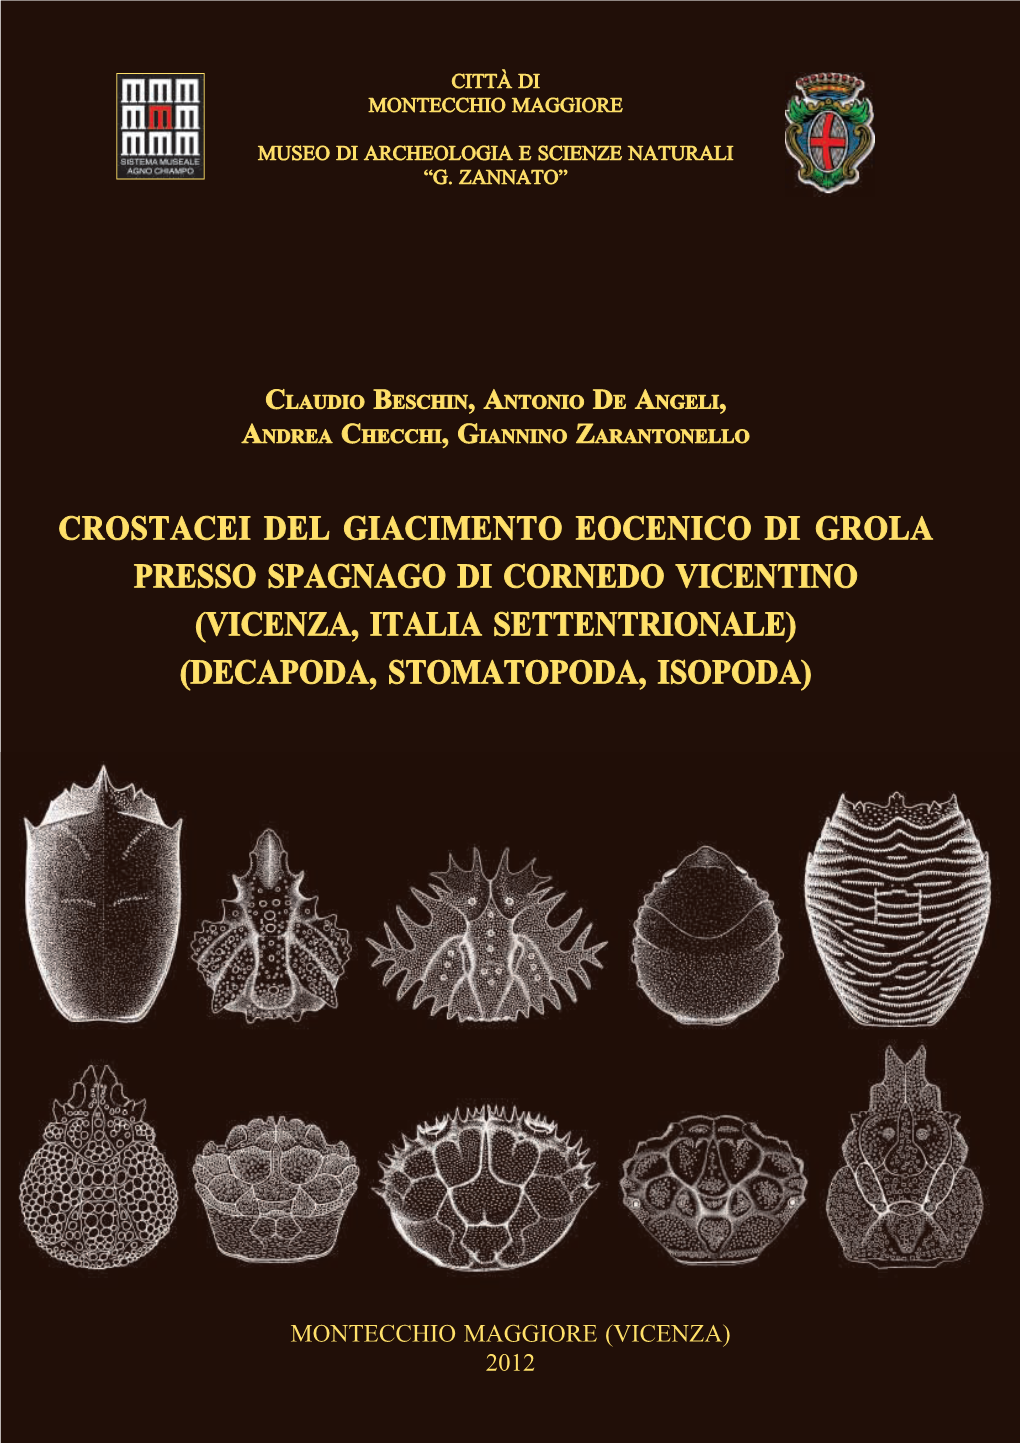 Vicenza, Italia Settentrionale) (Decapoda, Stomatopoda, Isopoda)